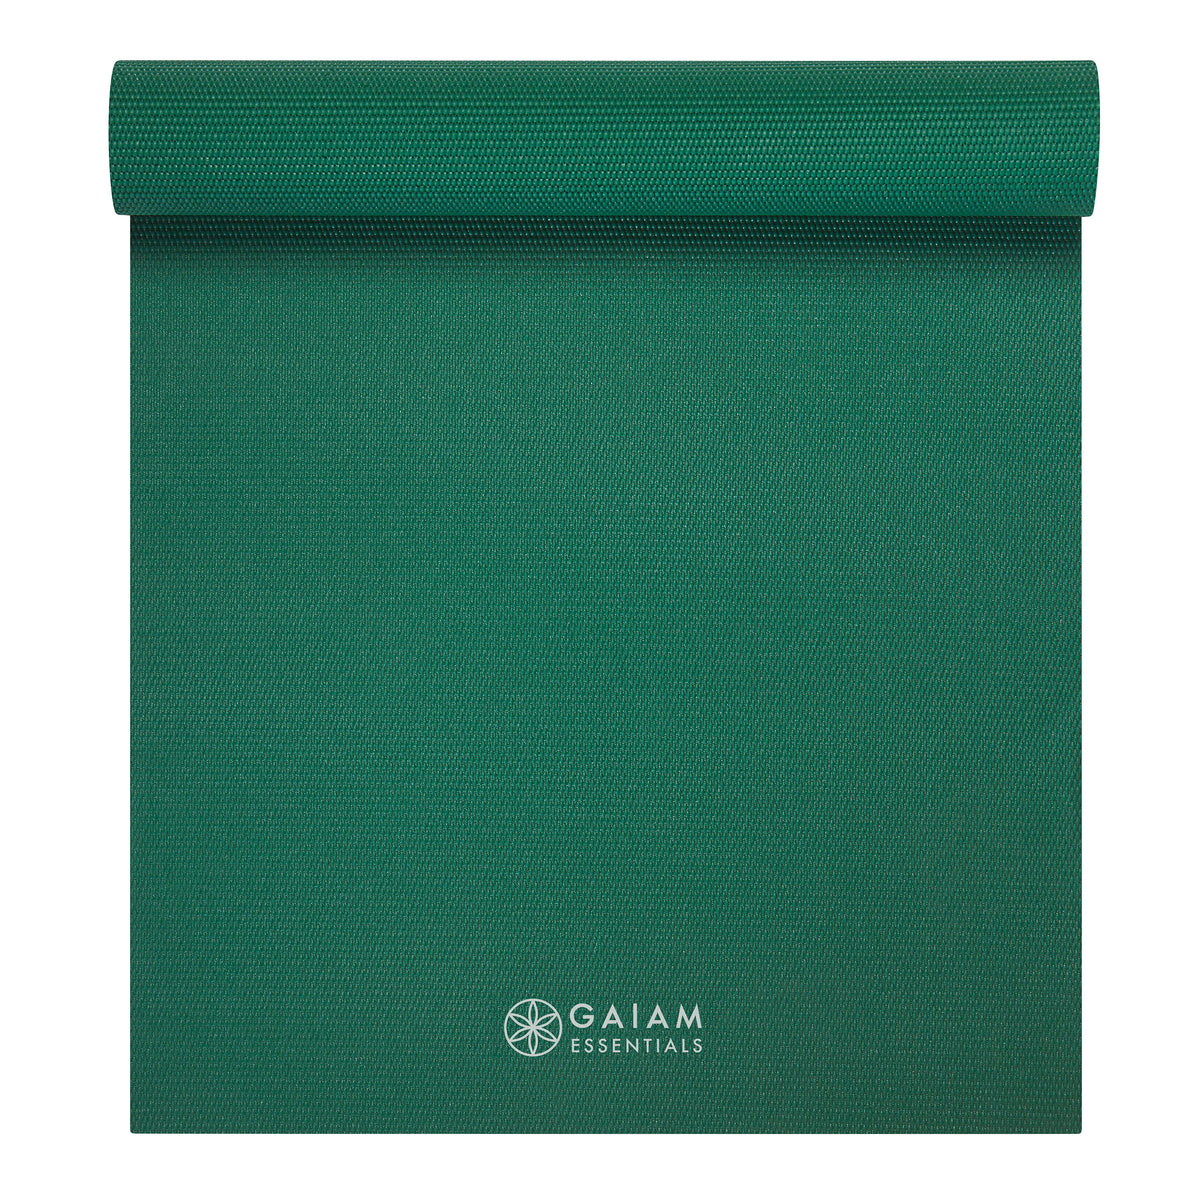 Gaiam Essential Support Yoga Mat 5mm Ocean Emerald - Gaiam